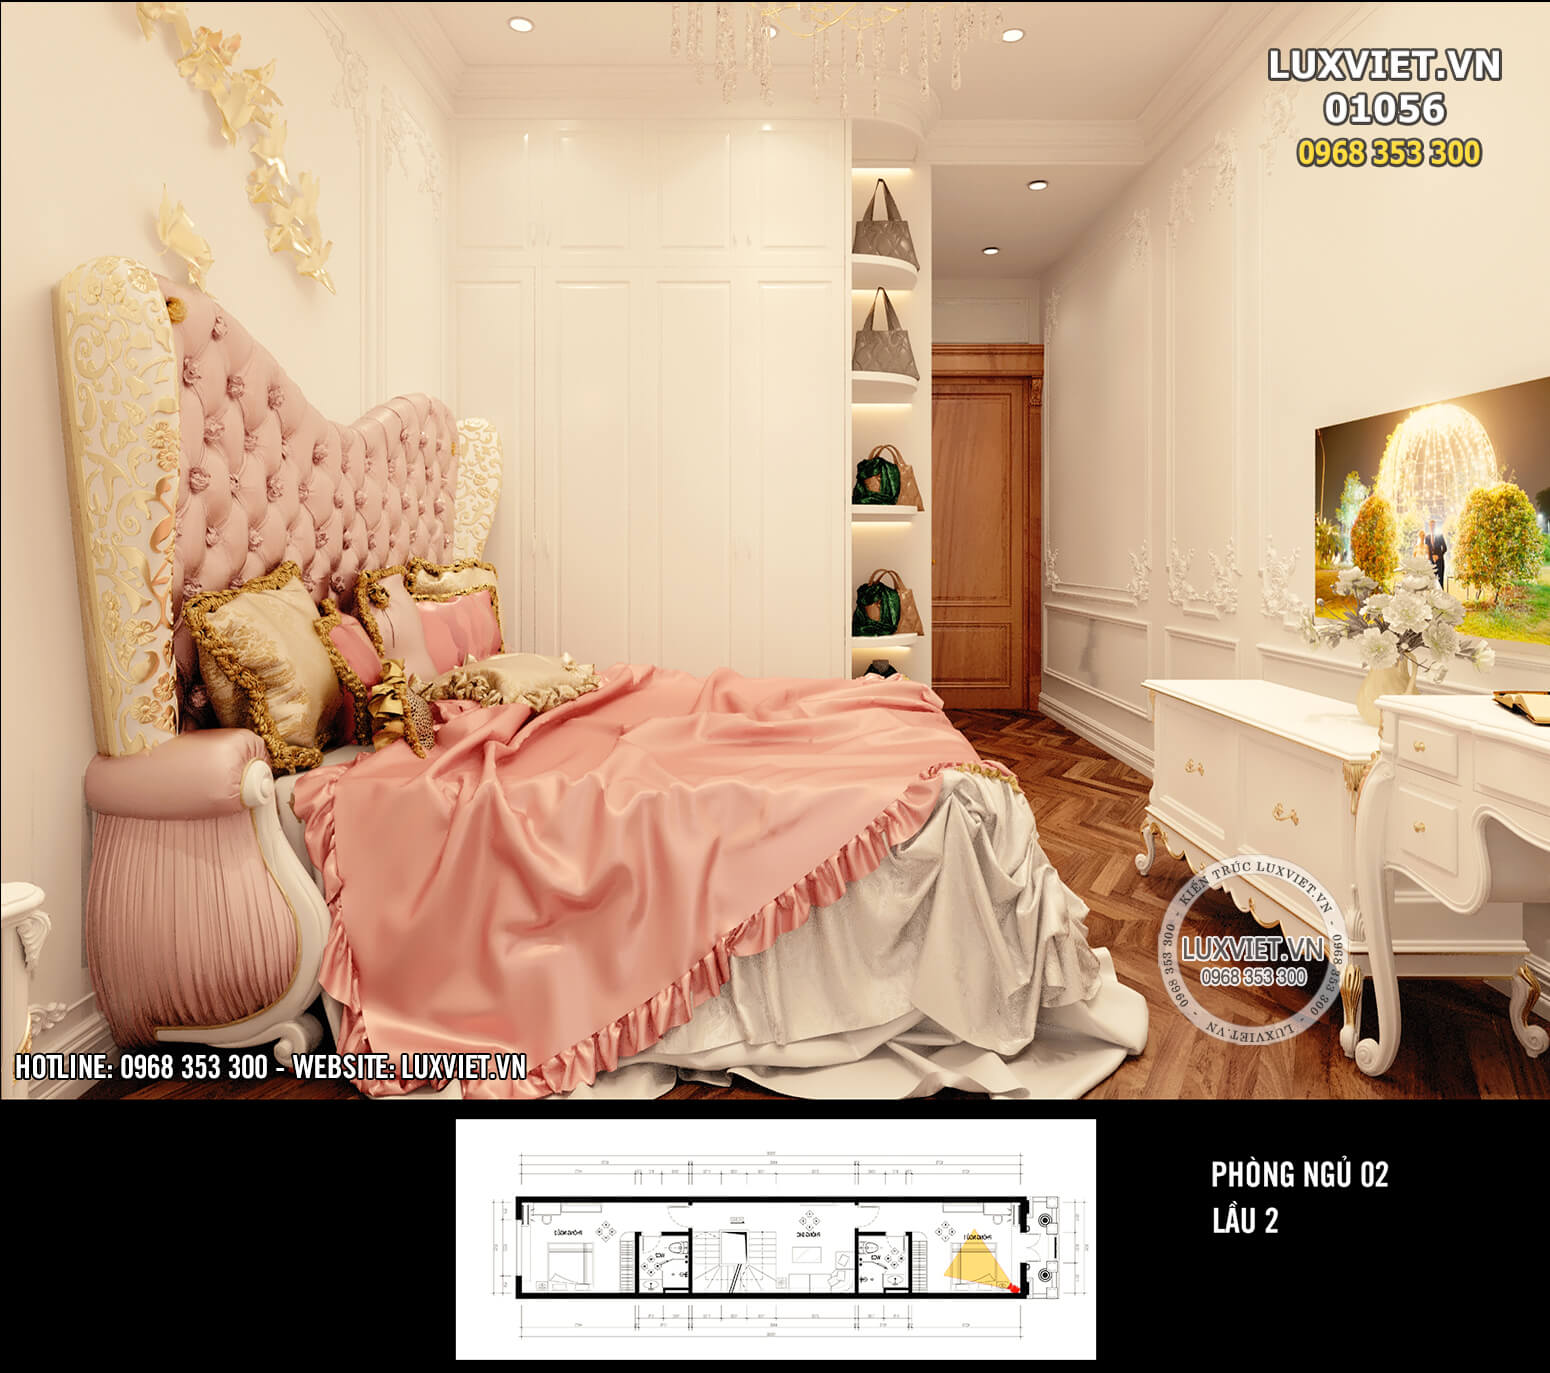 Hình ảnh: Phòng ngủ tông màu hồng dễ thương - LV 01056